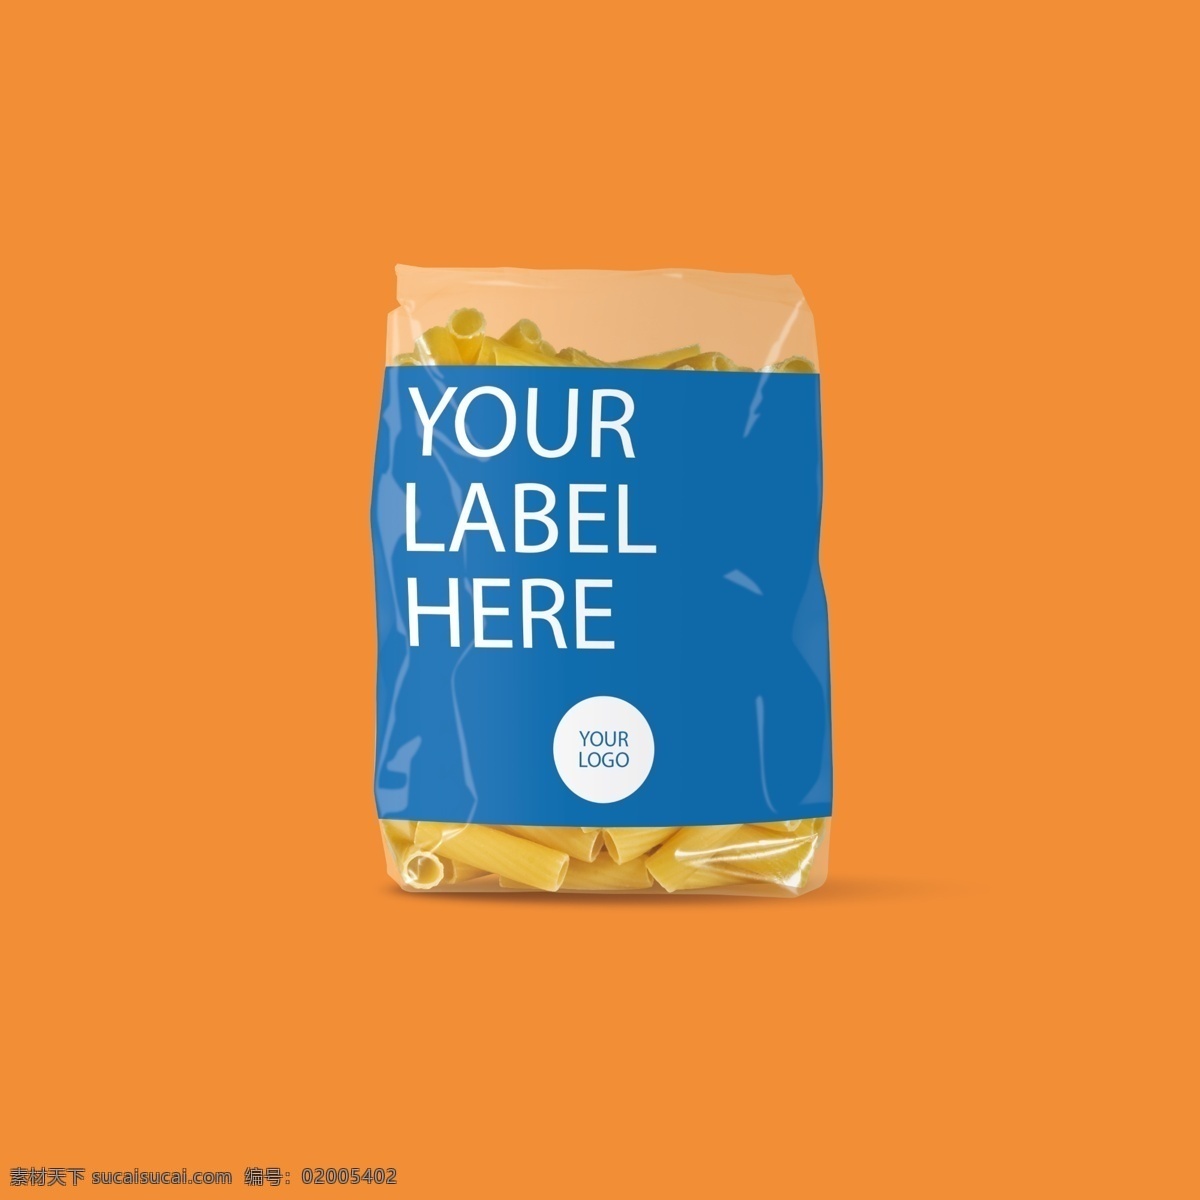 面食 塑料袋 包装设计 产品包装 广告 包装广告 包装图 包装设计广告 产品展示图 包装图纸 橙色